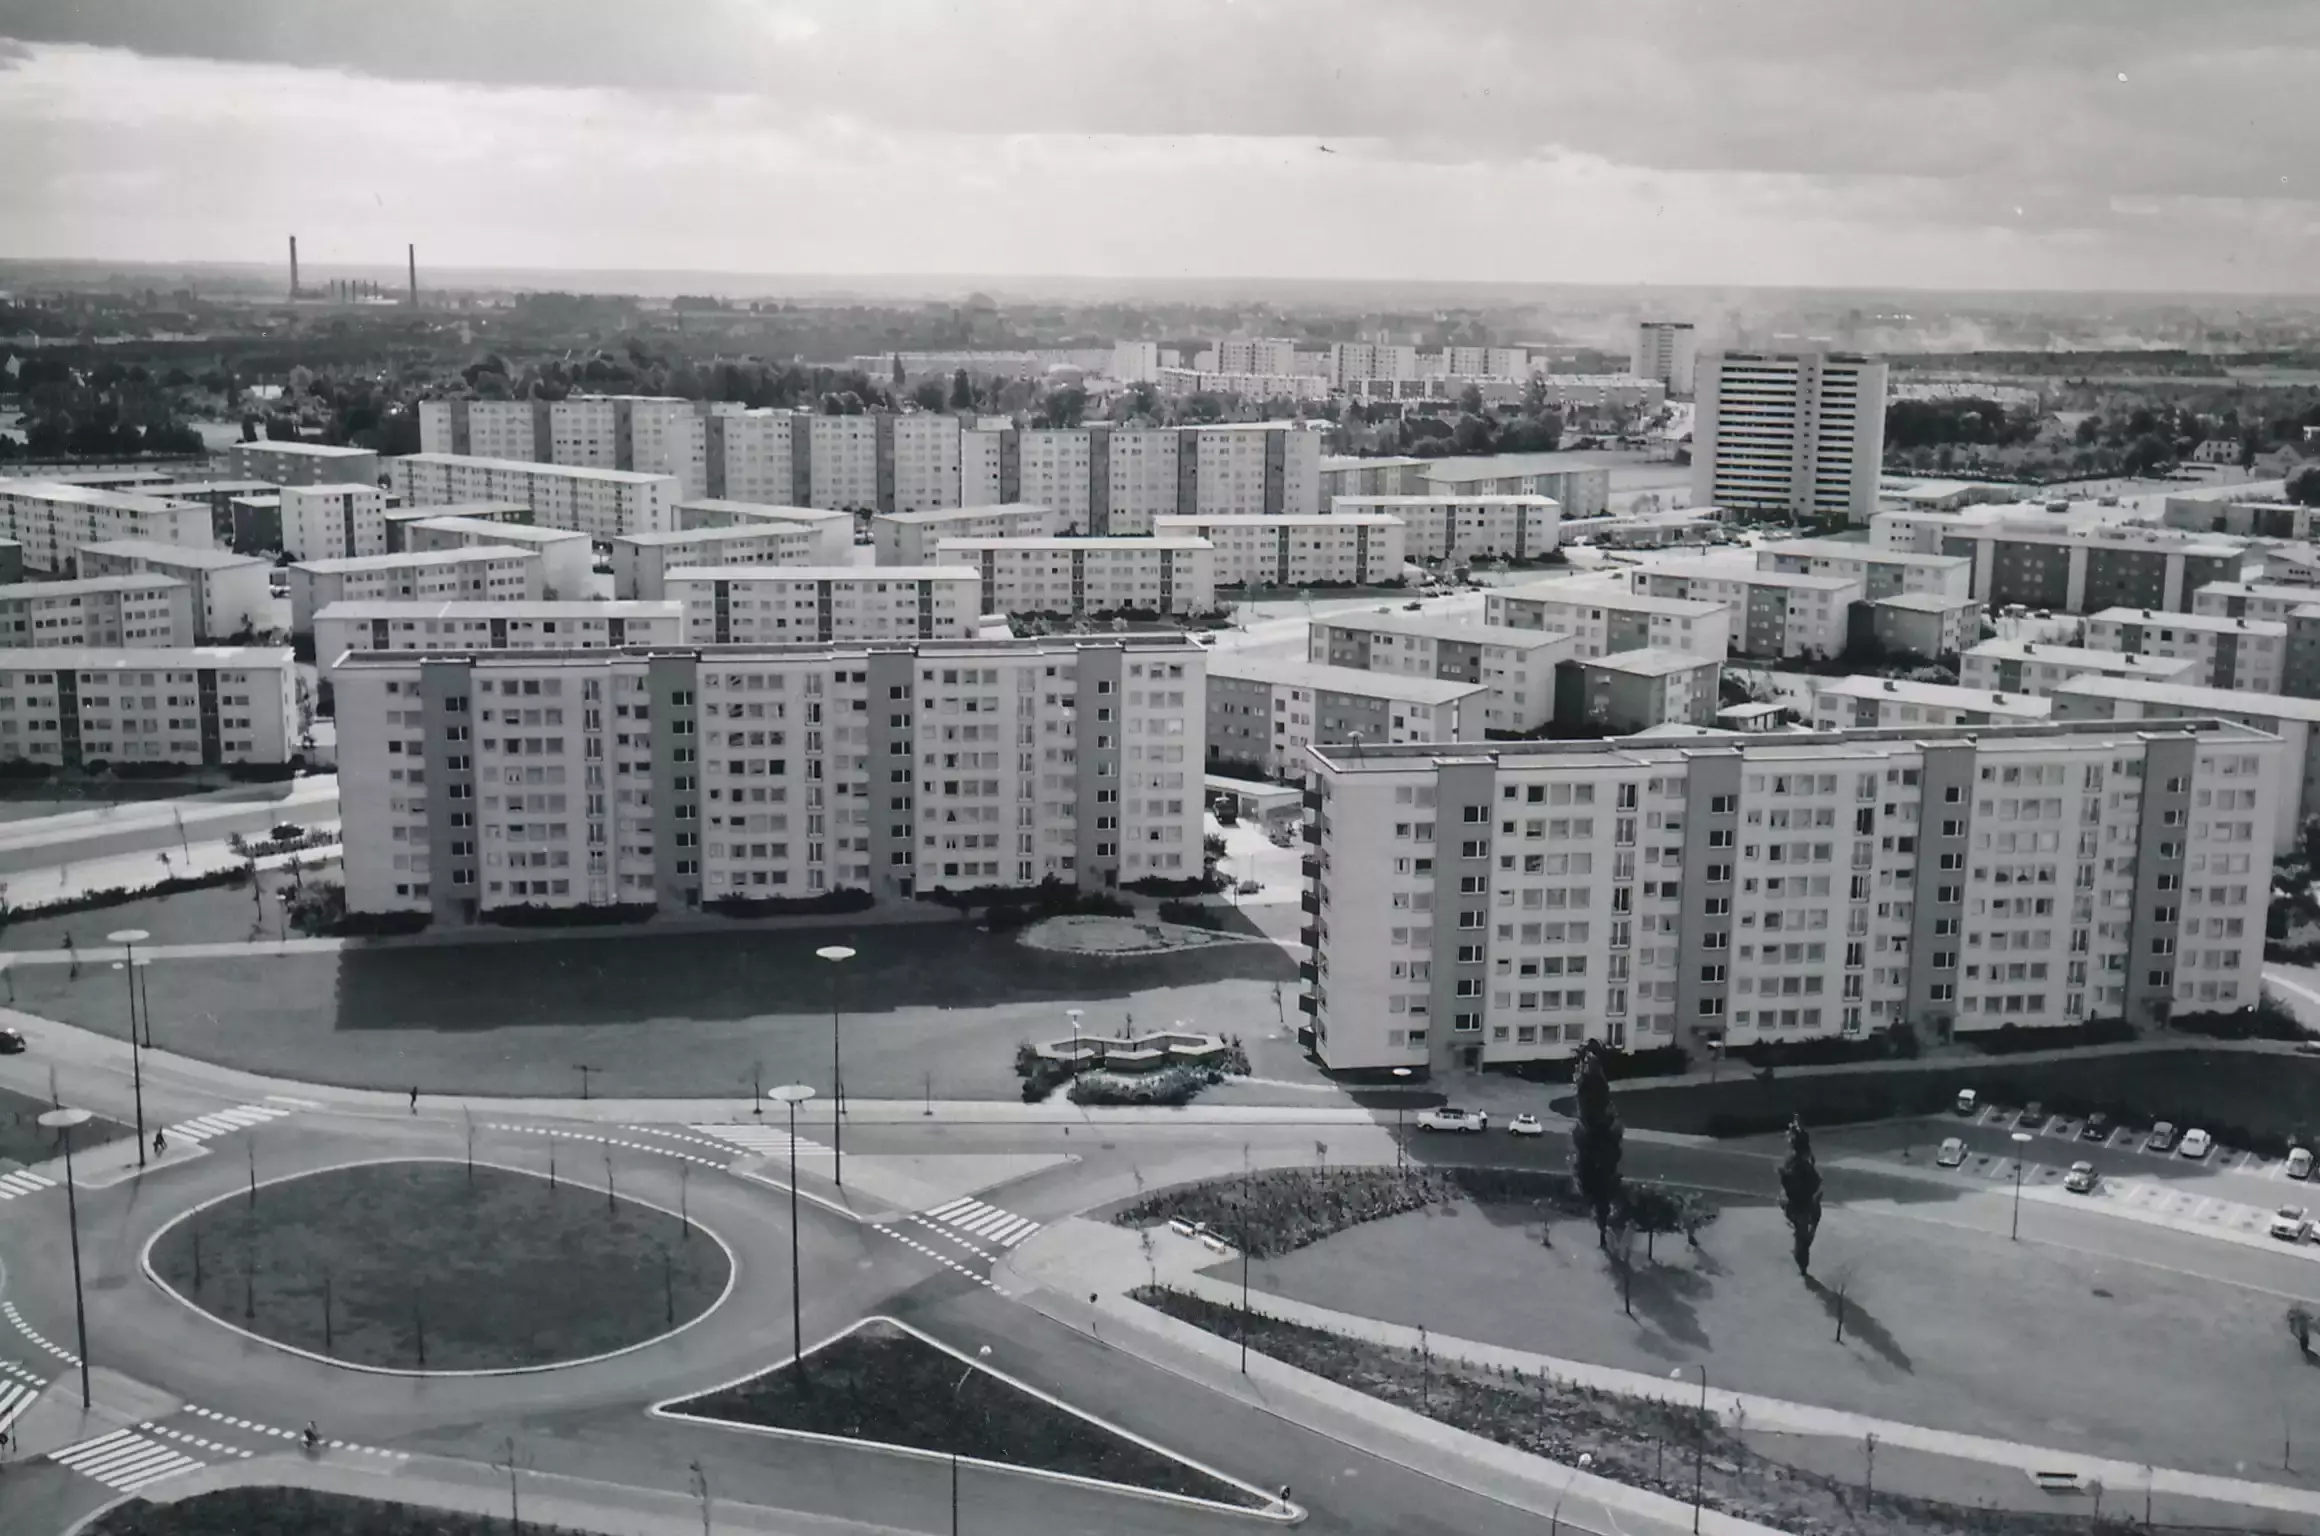 Blick auf eine riesige Siedlung mit mehreren weissen Hochhaus-Wohnblöcken